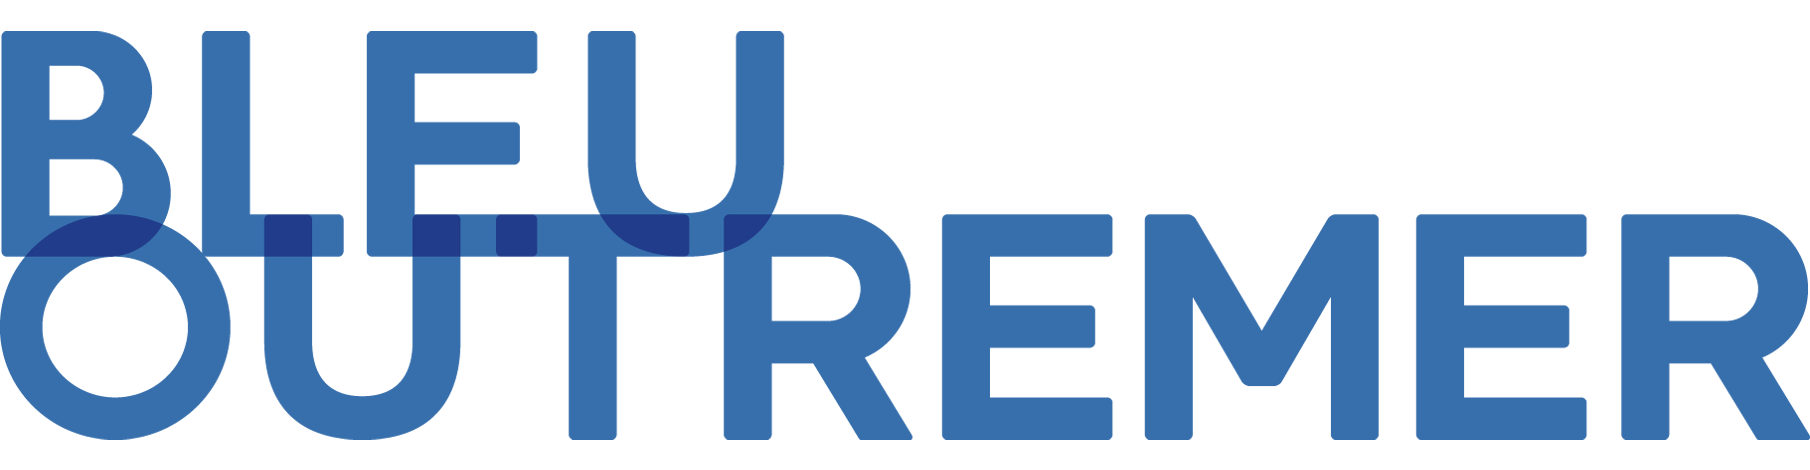 Bleuoutremer logo